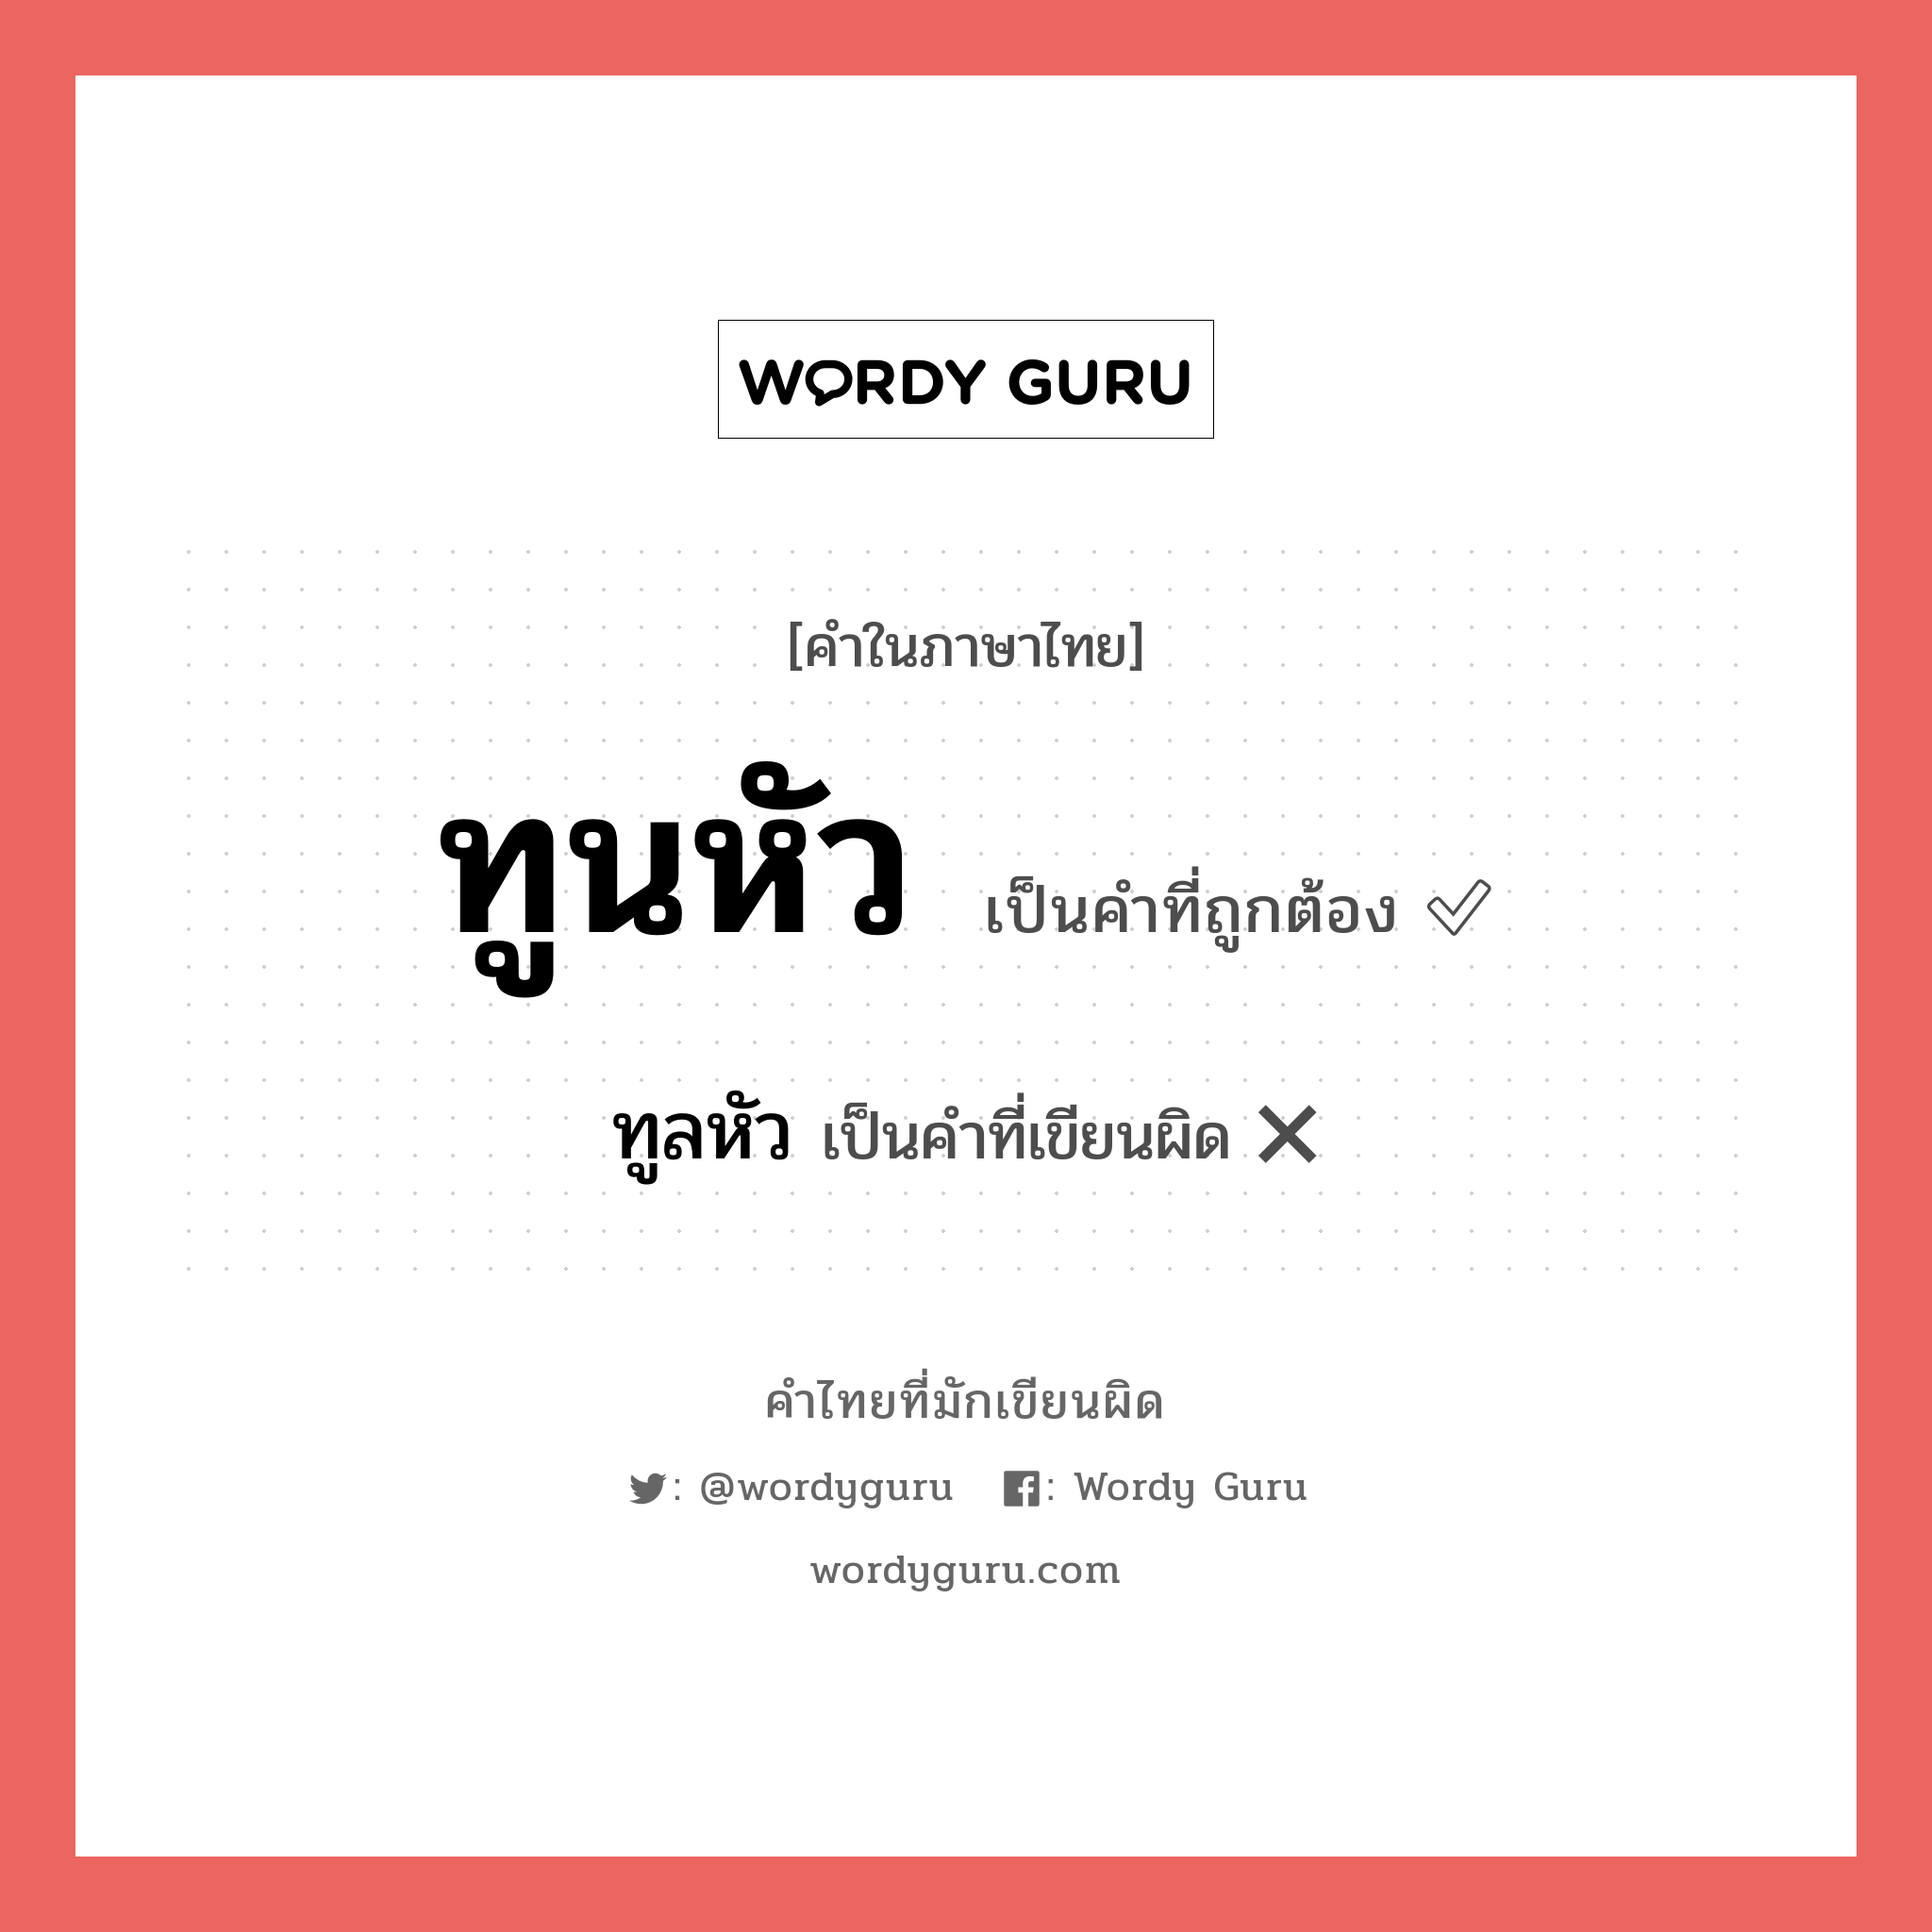 ทูนหัว หรือ ทูลหัว คำไหนเขียนถูก?, คำในภาษาไทยที่มักเขียนผิด ทูนหัว คำที่ผิด ❌ ทูลหัว